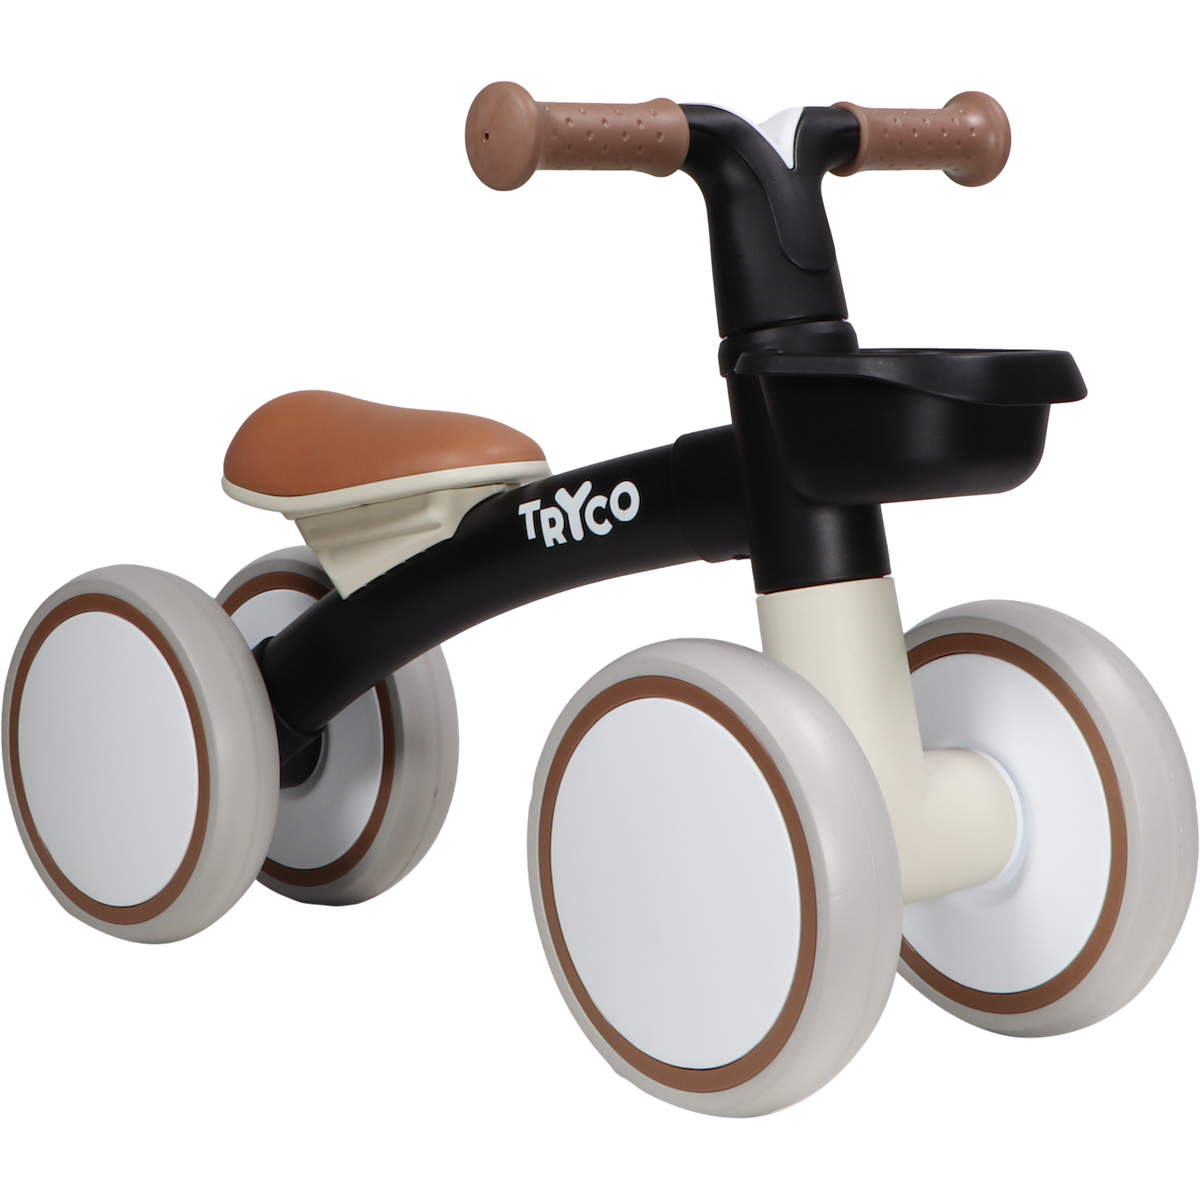 Met de Tryco loopfiets luna black heb je de perfecte eerste fiets voor je kleintje. De loopfiets is de ideale voorbereiding op een echte fiets. Je kleine fietskampioen leert in no-time het evenwicht te bewaren. VanZus